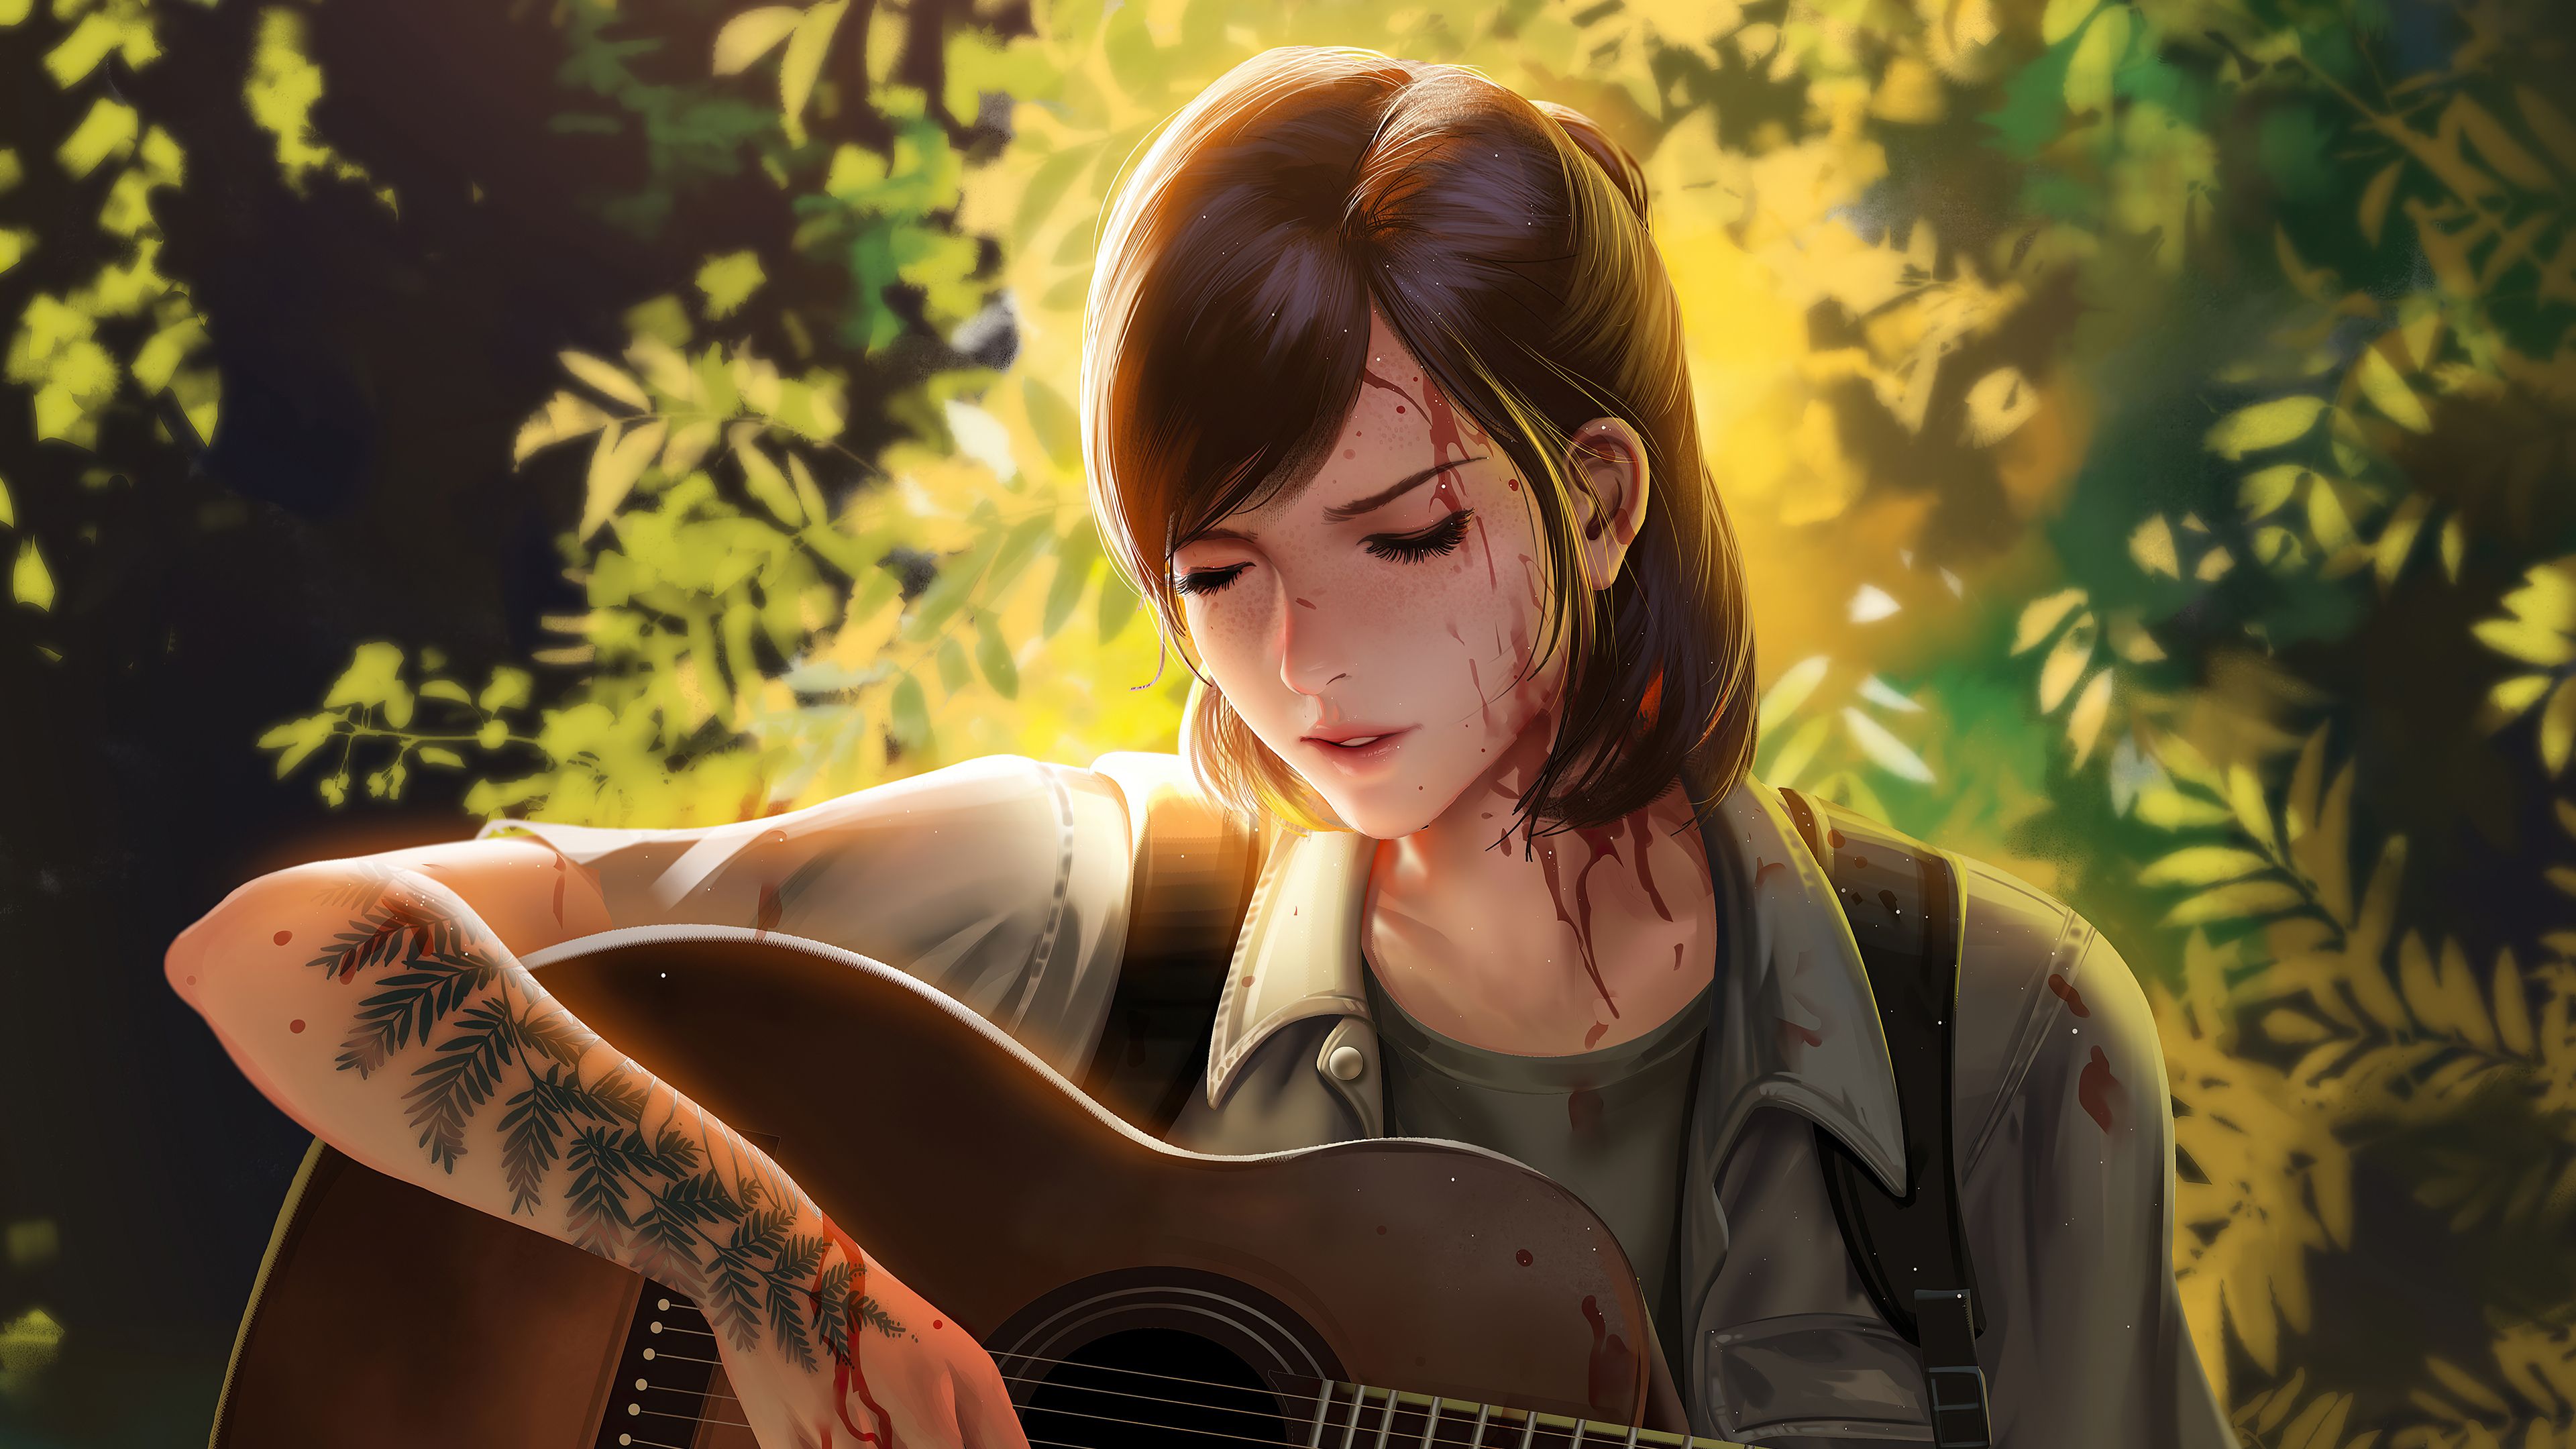 Artwork Ellie Williams The Last Of Us The Last Of Us 2 Digital Art Fan Art ...